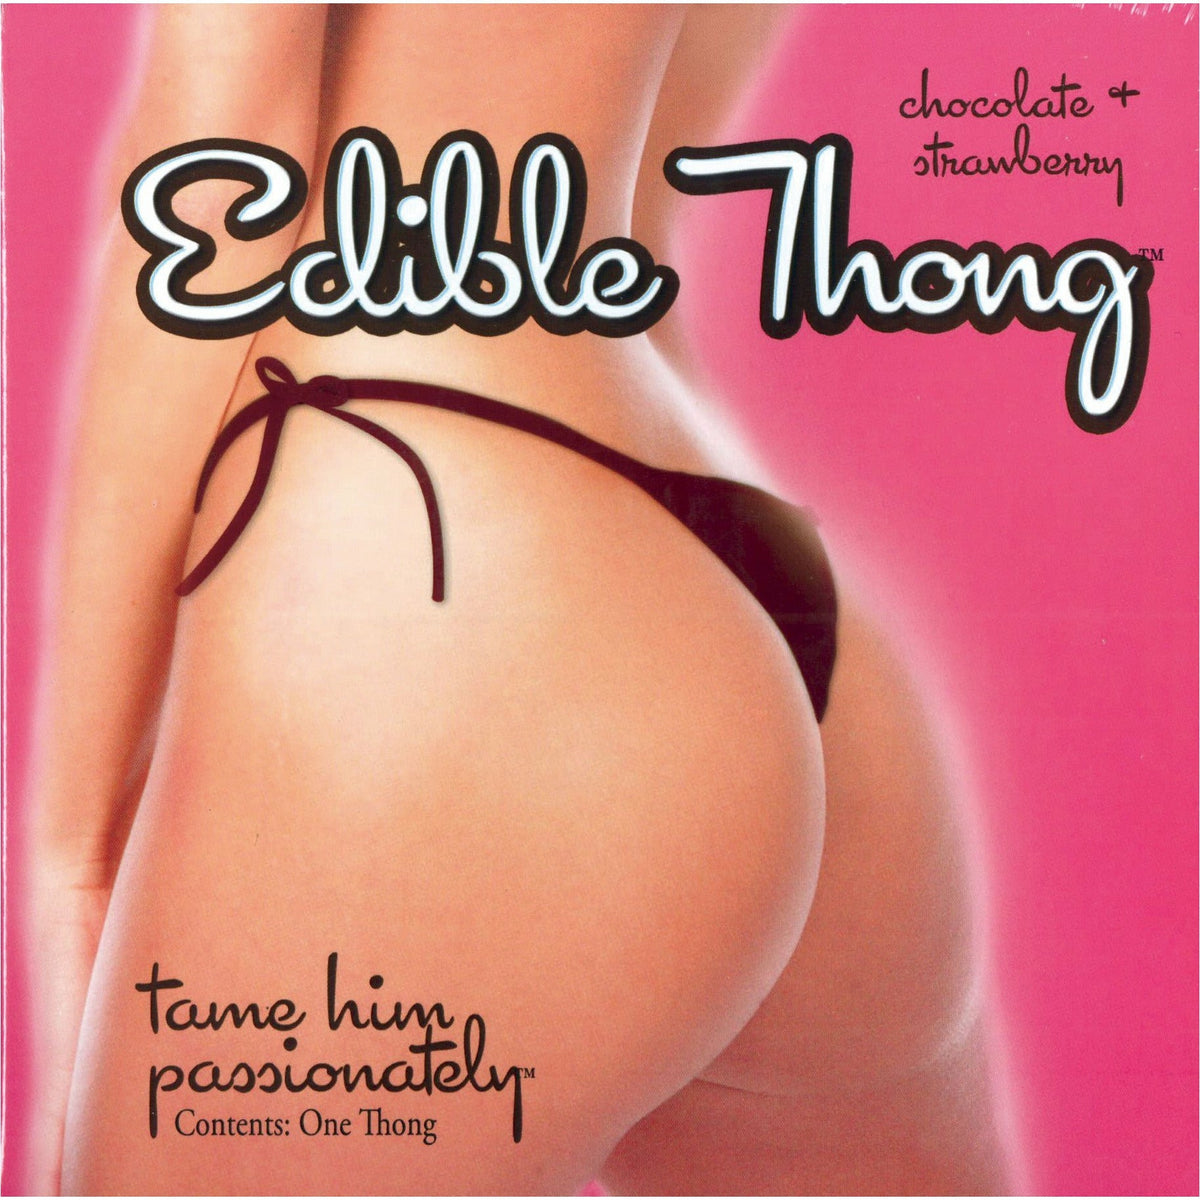 King Edible Thong